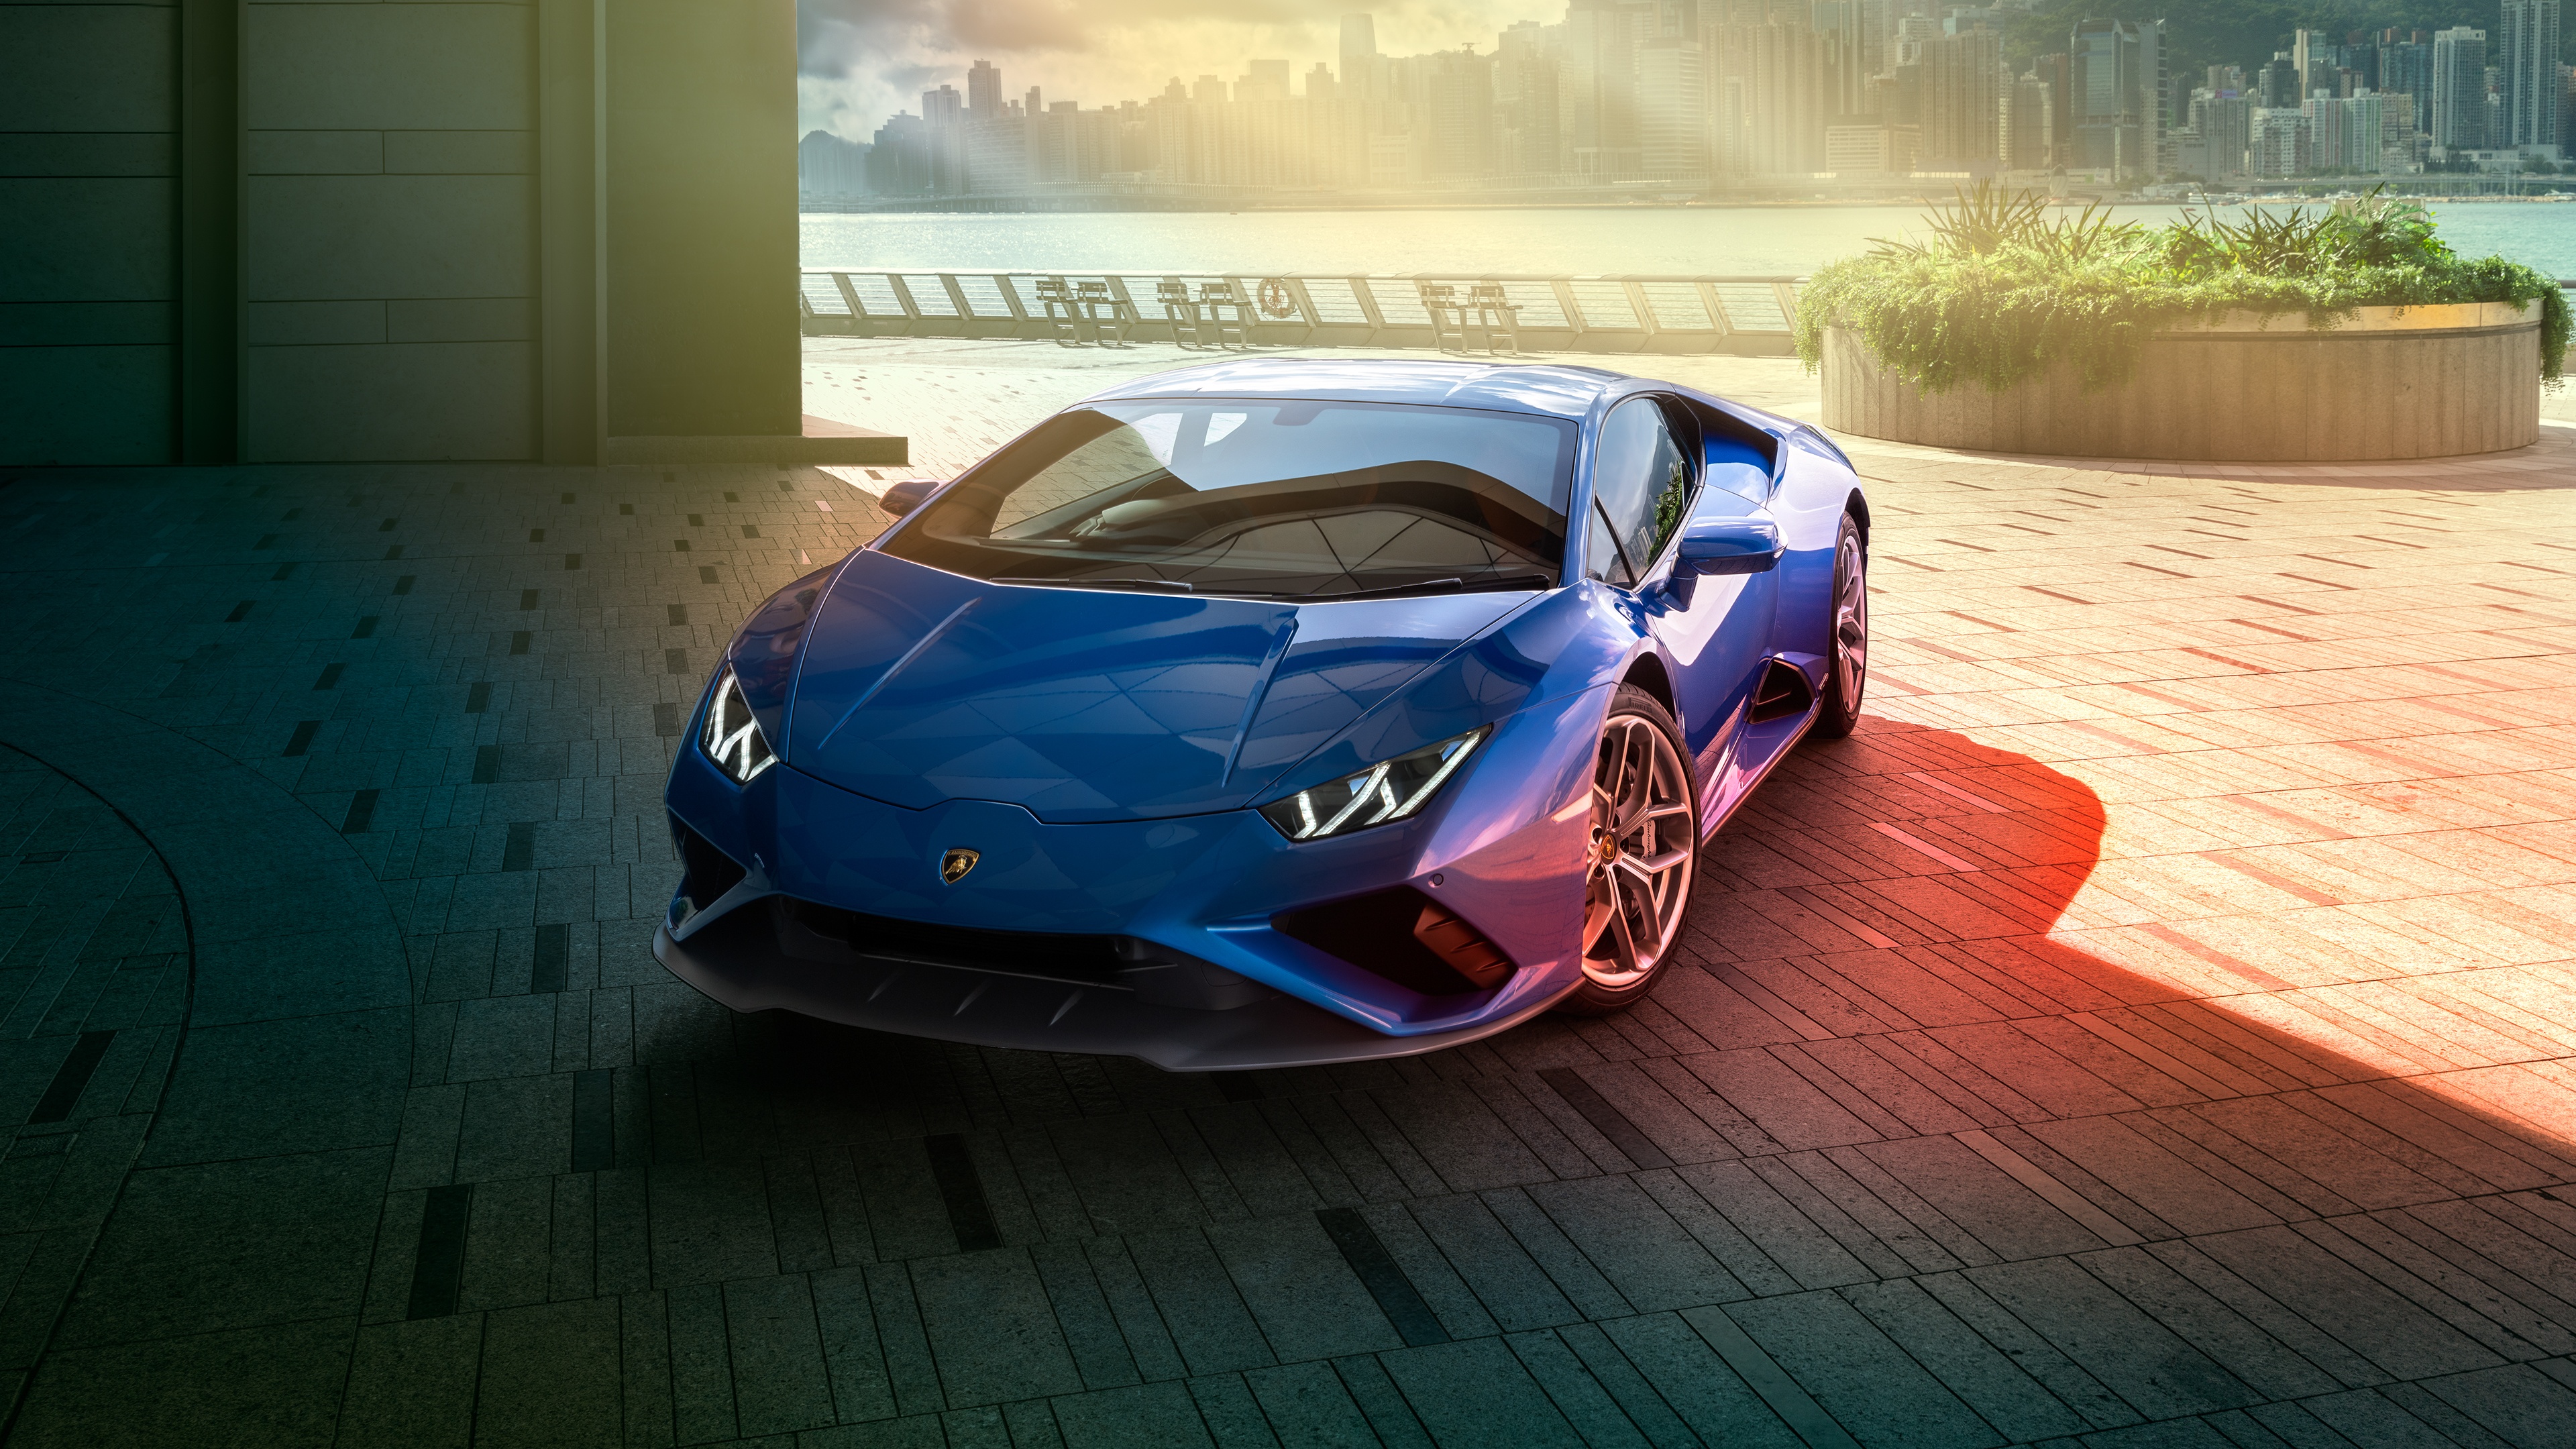 Lamborghini Huracan EVO RWD: Chào đón chiếc xe siêu sang đầy sức mạnh và hiệu năng cao Lamborghini Huracan EVO RWD - một trong những mẫu xe cao cấp được ưa chuộng nhất trên thị trường. Với công nghệ tiên tiến và tính năng thông minh, đây là một trong những chiếc xe đáng sở hữu nhất cho những ai yêu thích tốc độ và đẳng cấp.